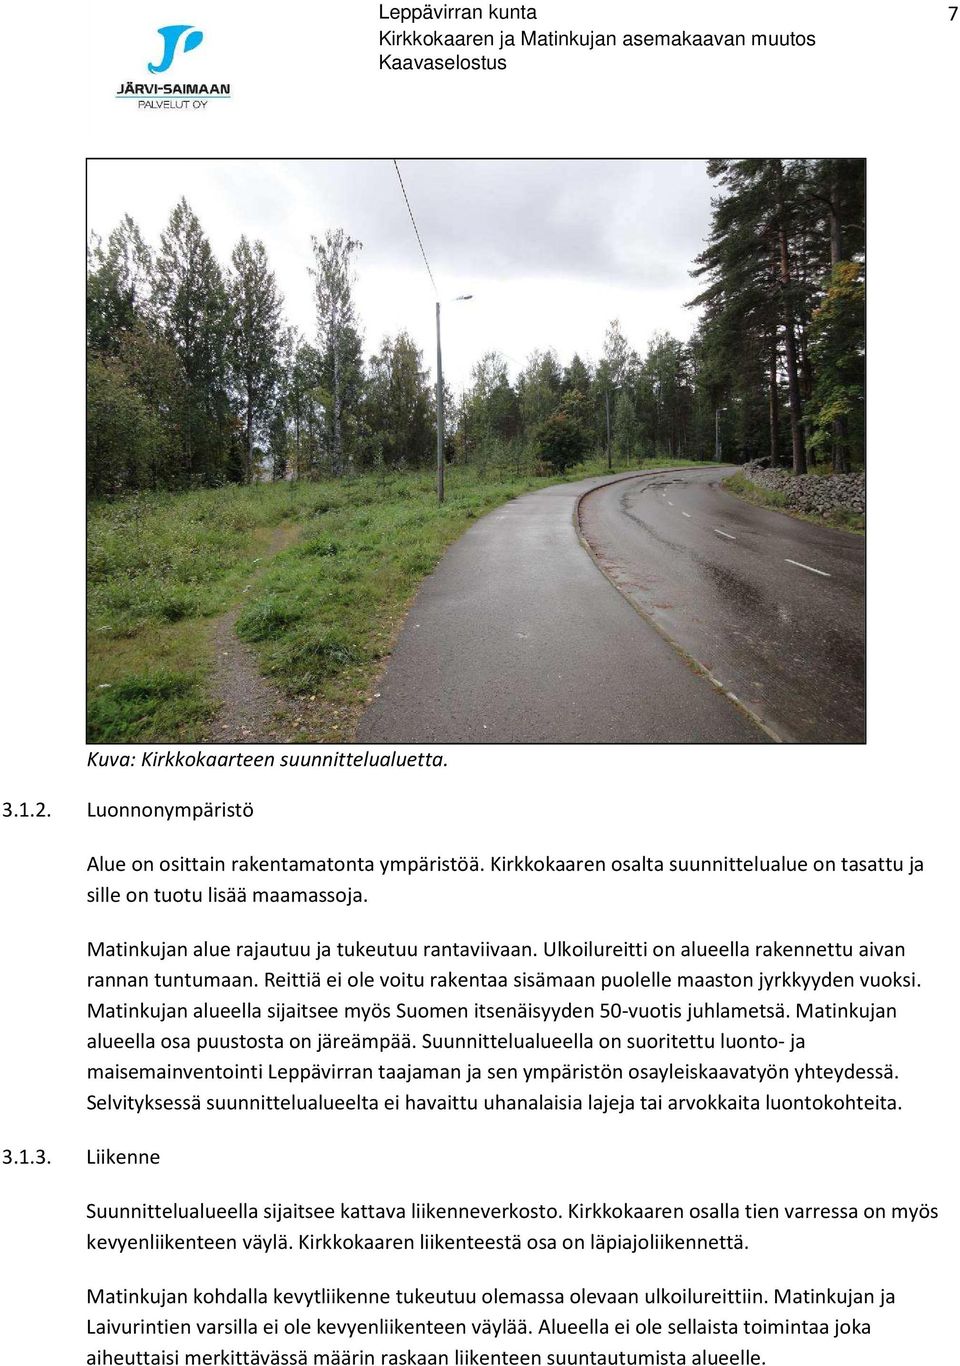 Reittiä ei ole voitu rakentaa sisämaan puolelle maaston jyrkkyyden vuoksi. Matinkujan alueella sijaitsee myös Suomen itsenäisyyden 50-vuotis juhlametsä. Matinkujan alueella osa puustosta on järeämpää.